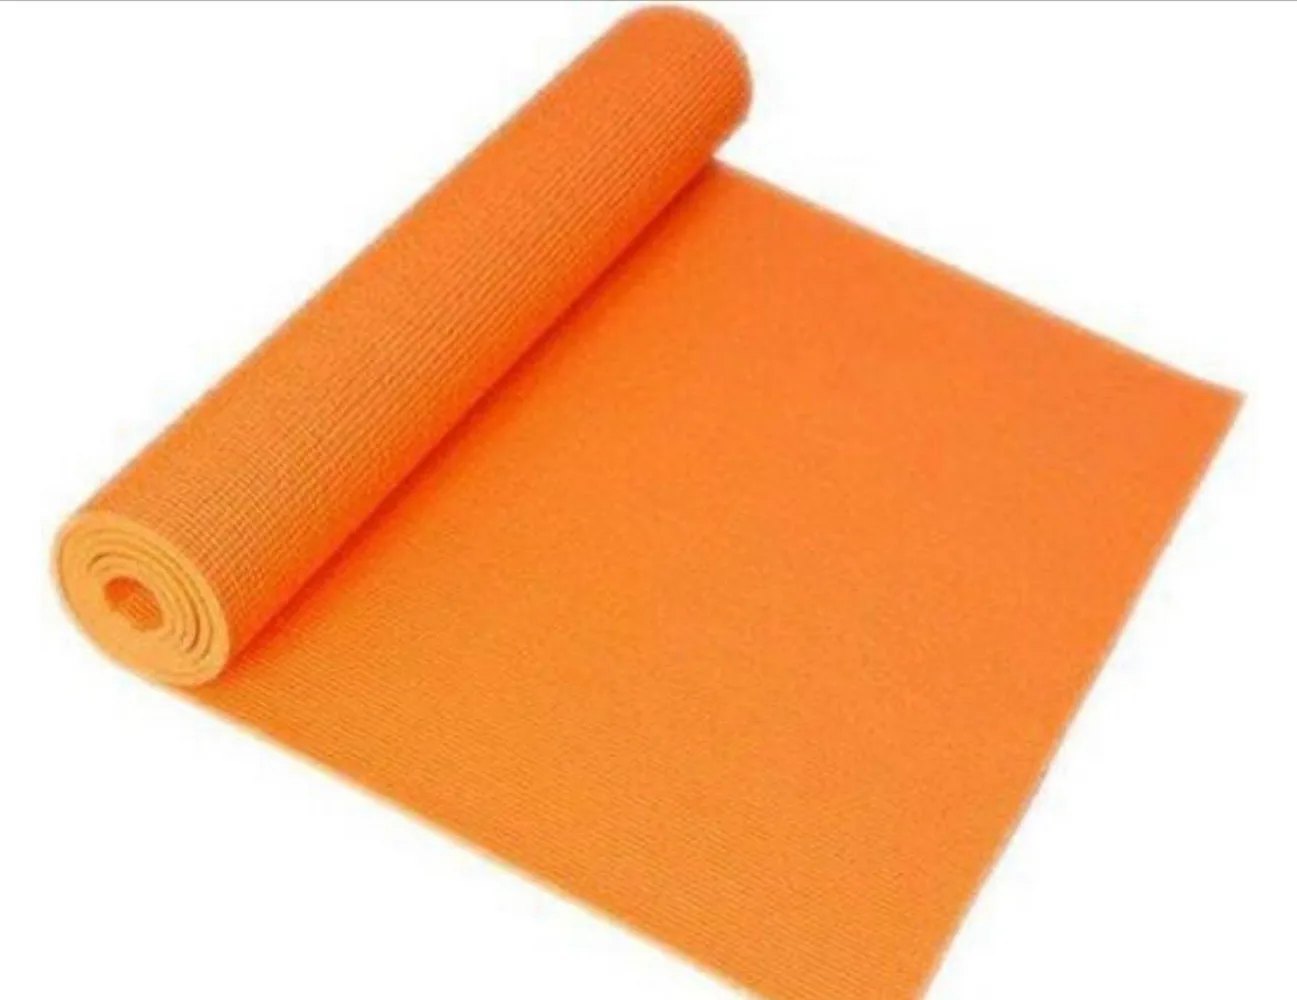 Yoga Mat Foam Plain Textured, 2x6 feet, Orange